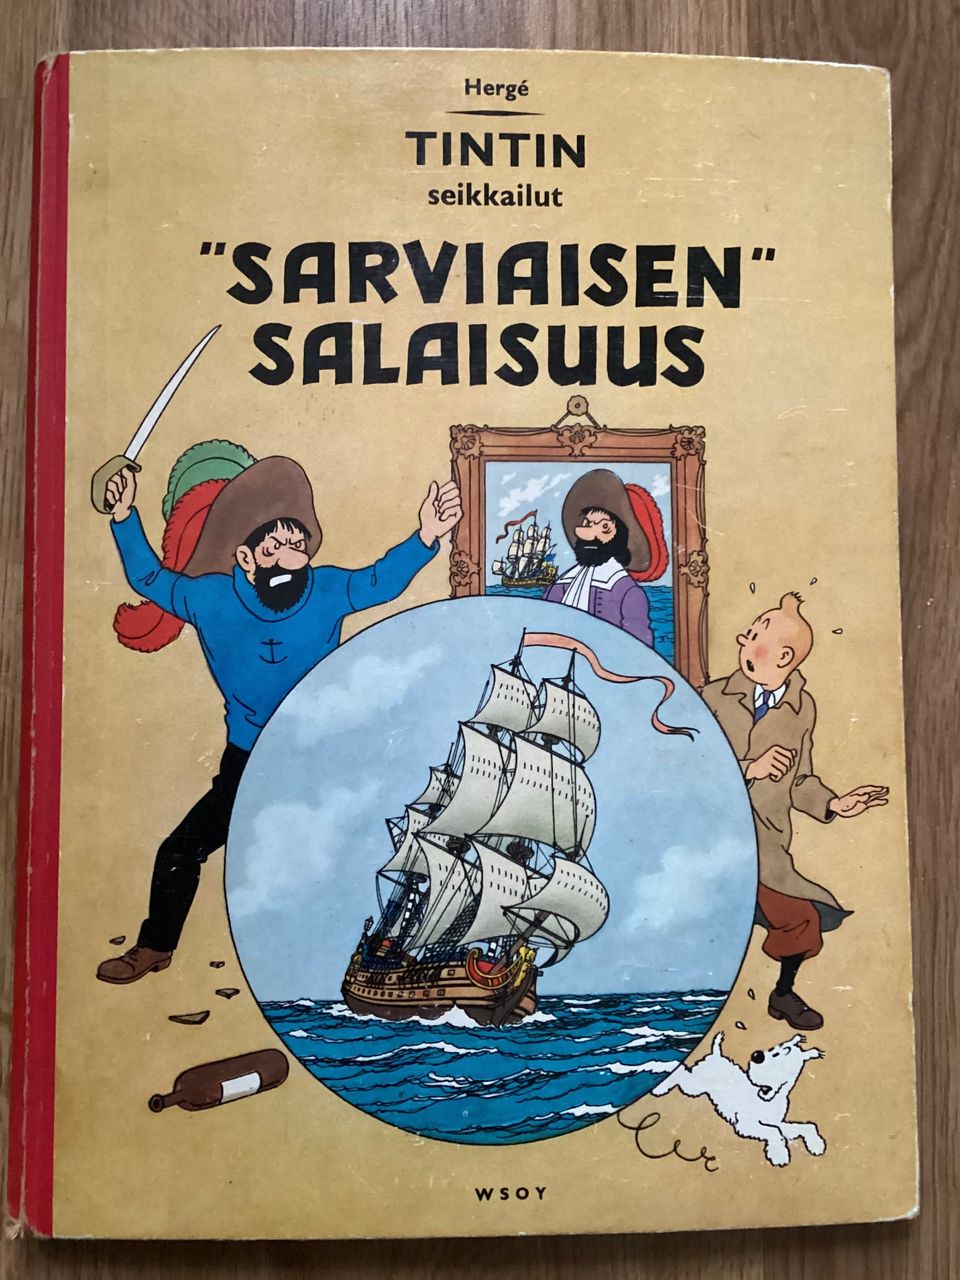 Tintin seikkailut / Sarviaisen salaisuus